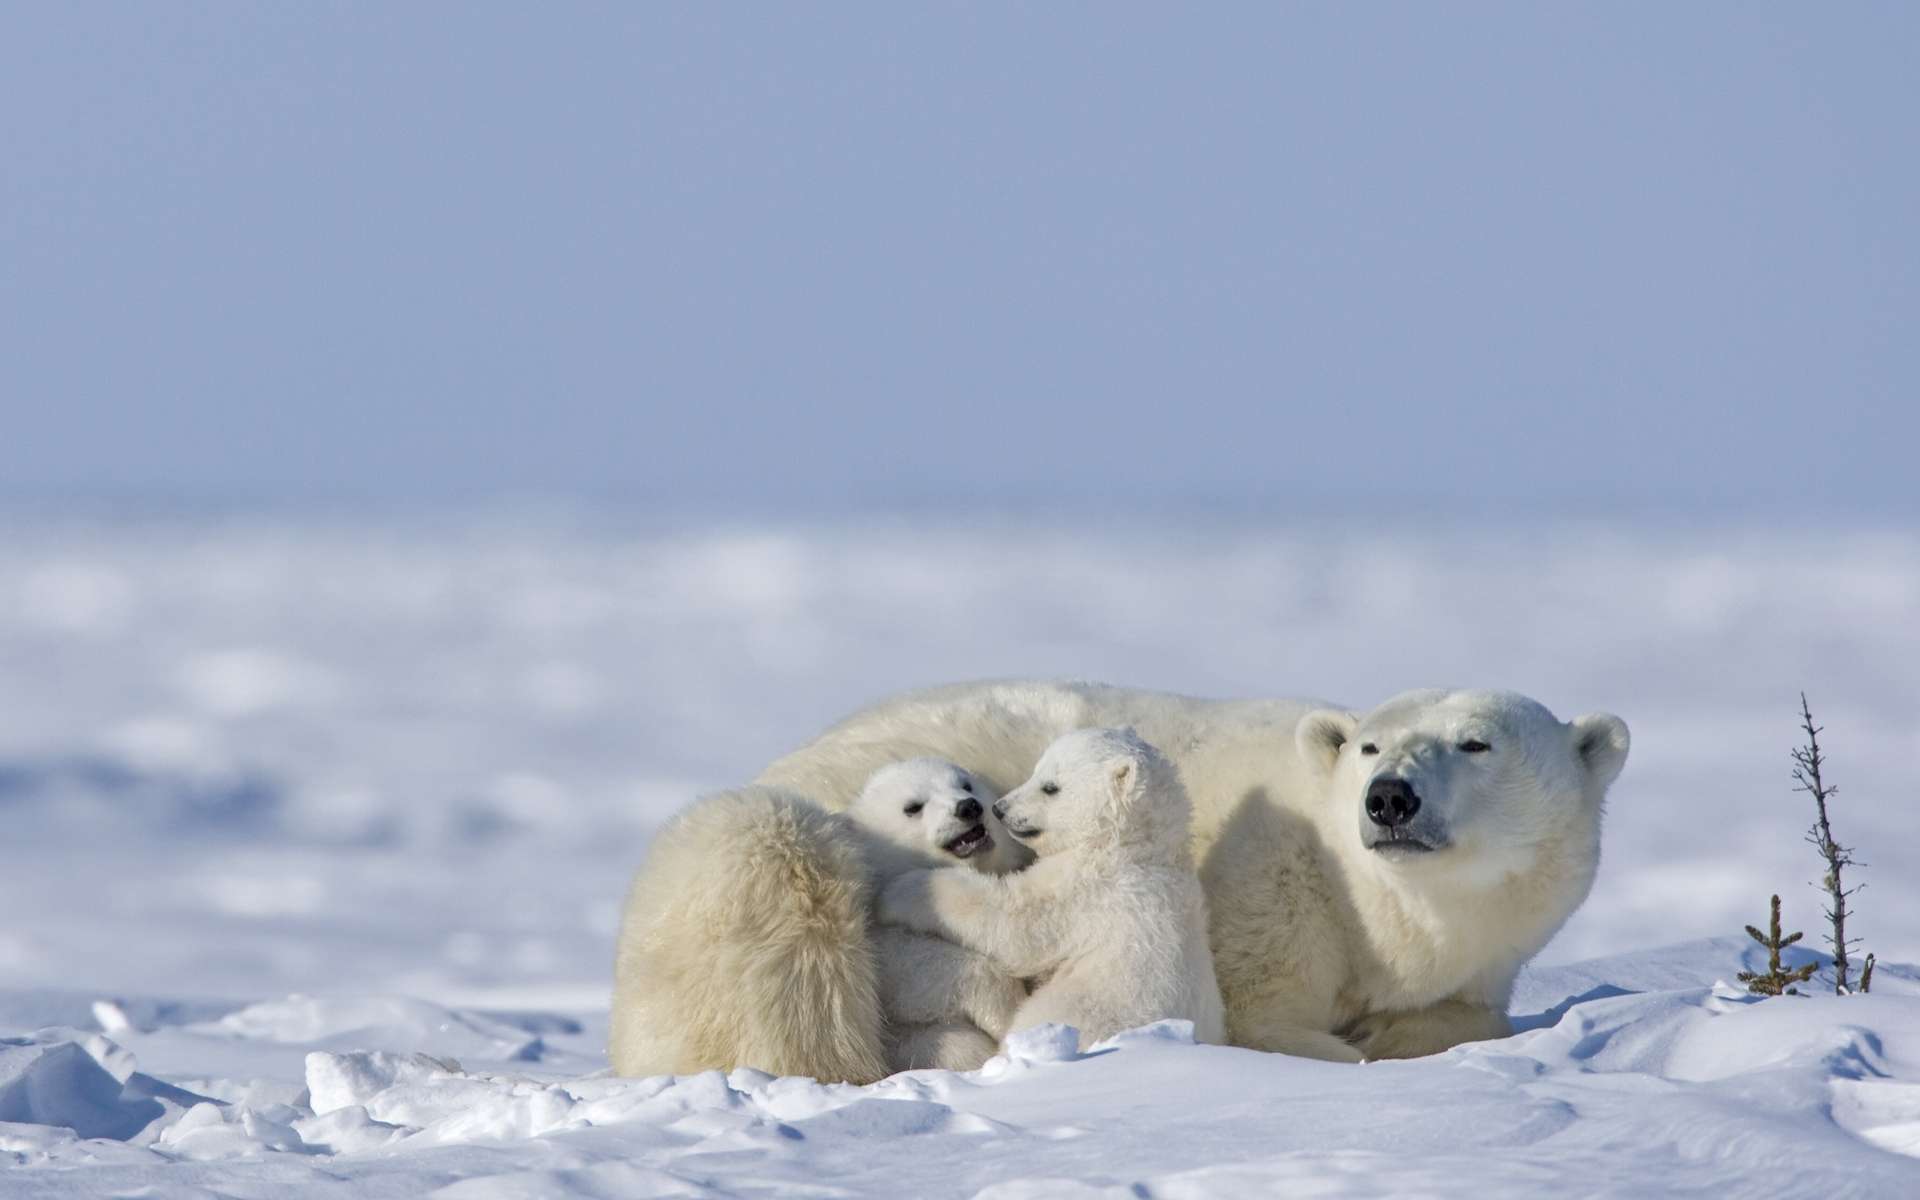 Les ours polaires s’entre-dévorent pour survivre dans l'Arctique russe